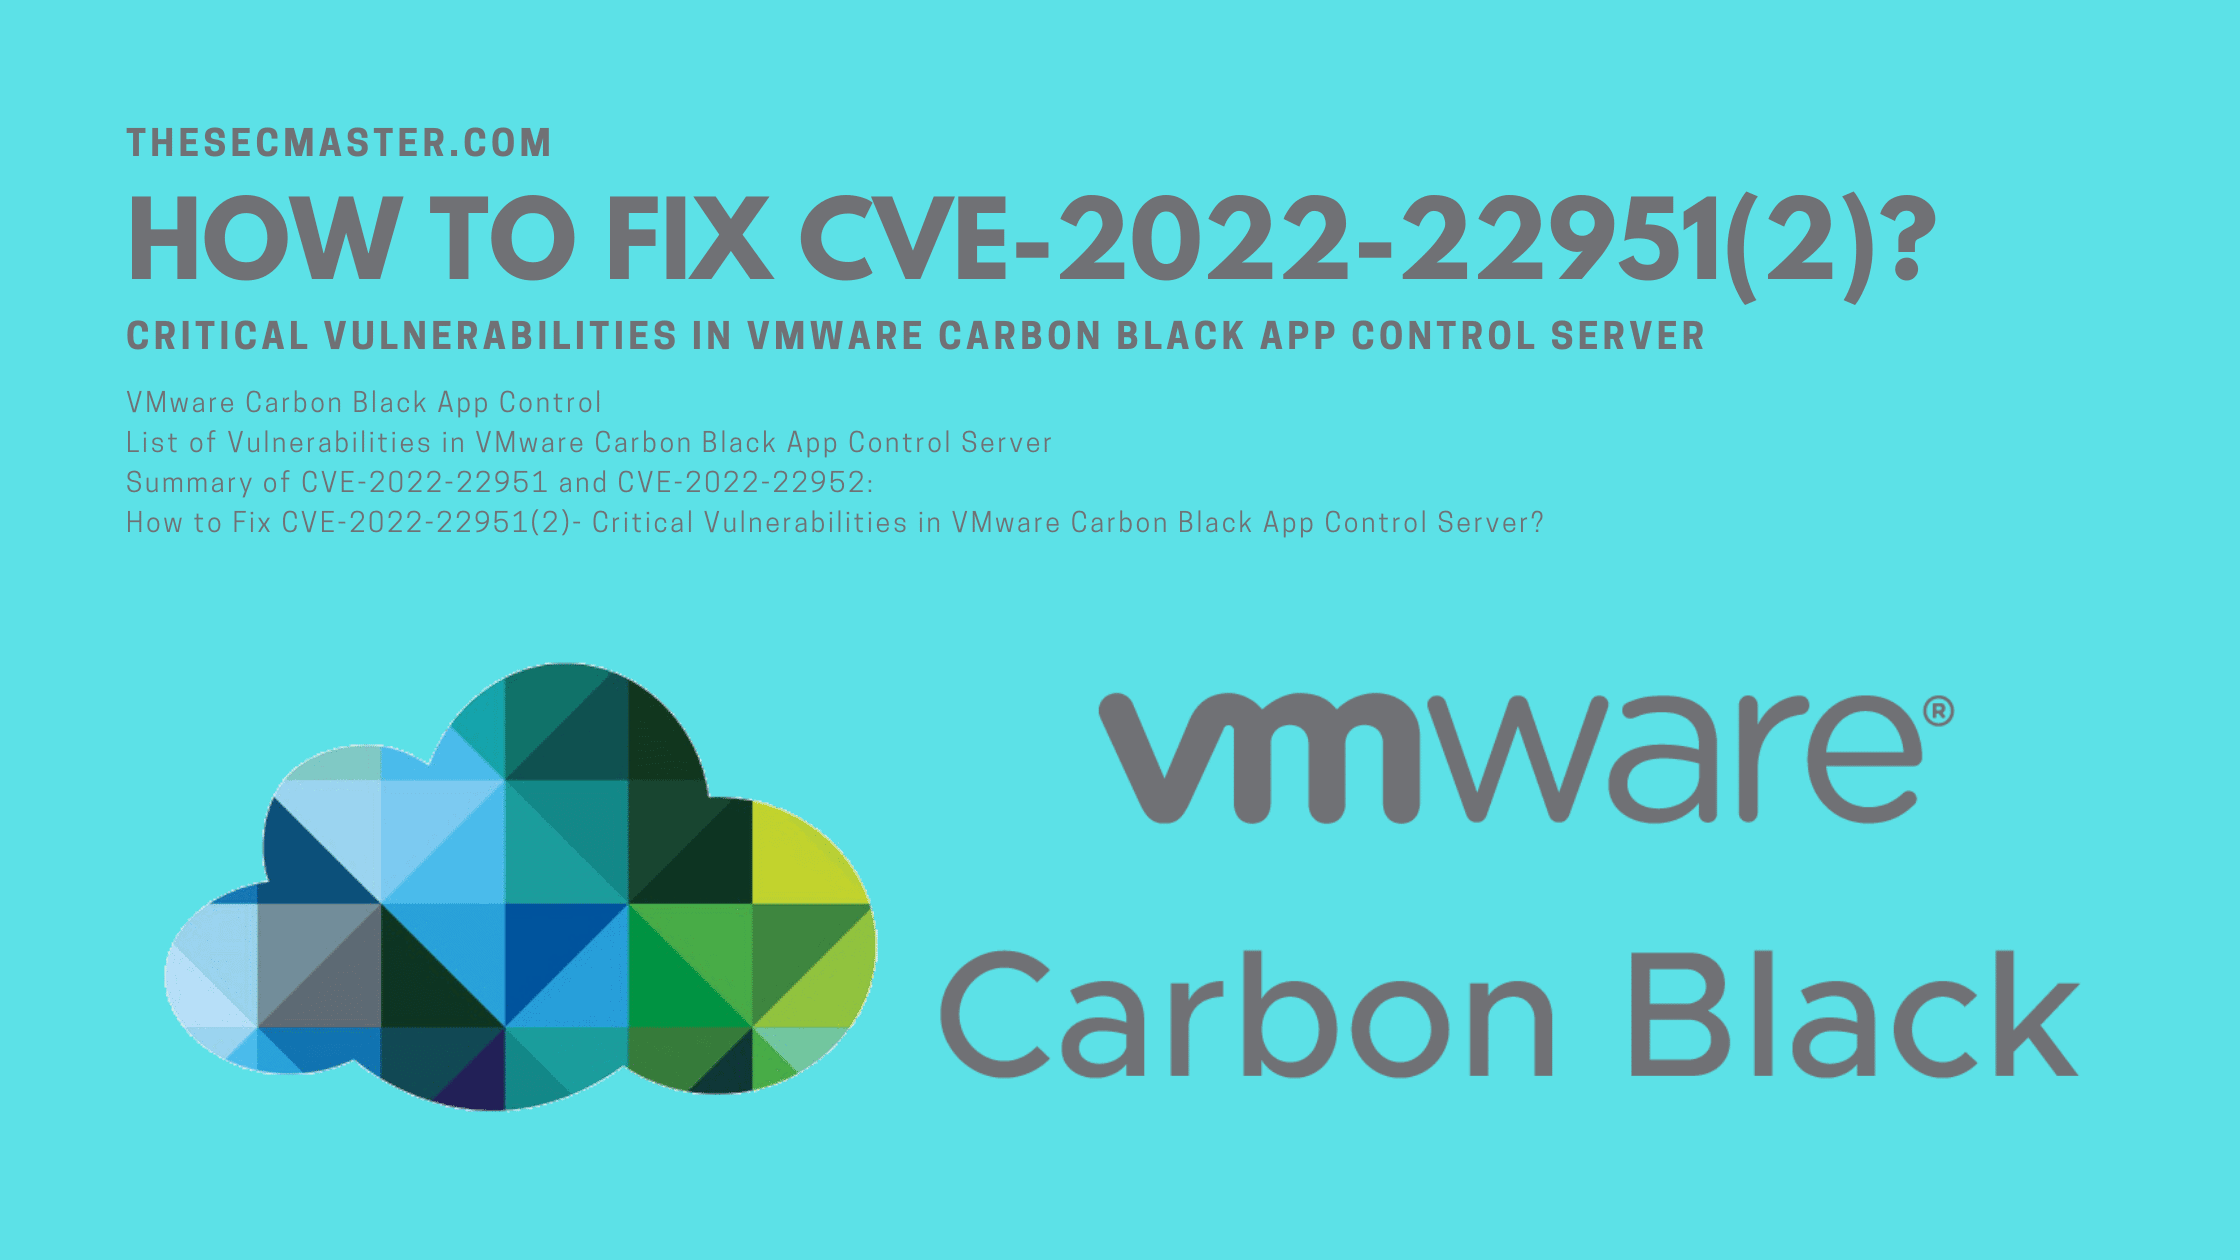 How To Fix Cve 2022 229512 Critical Vulnerabilities In Vmware Carbon Black App Control Server